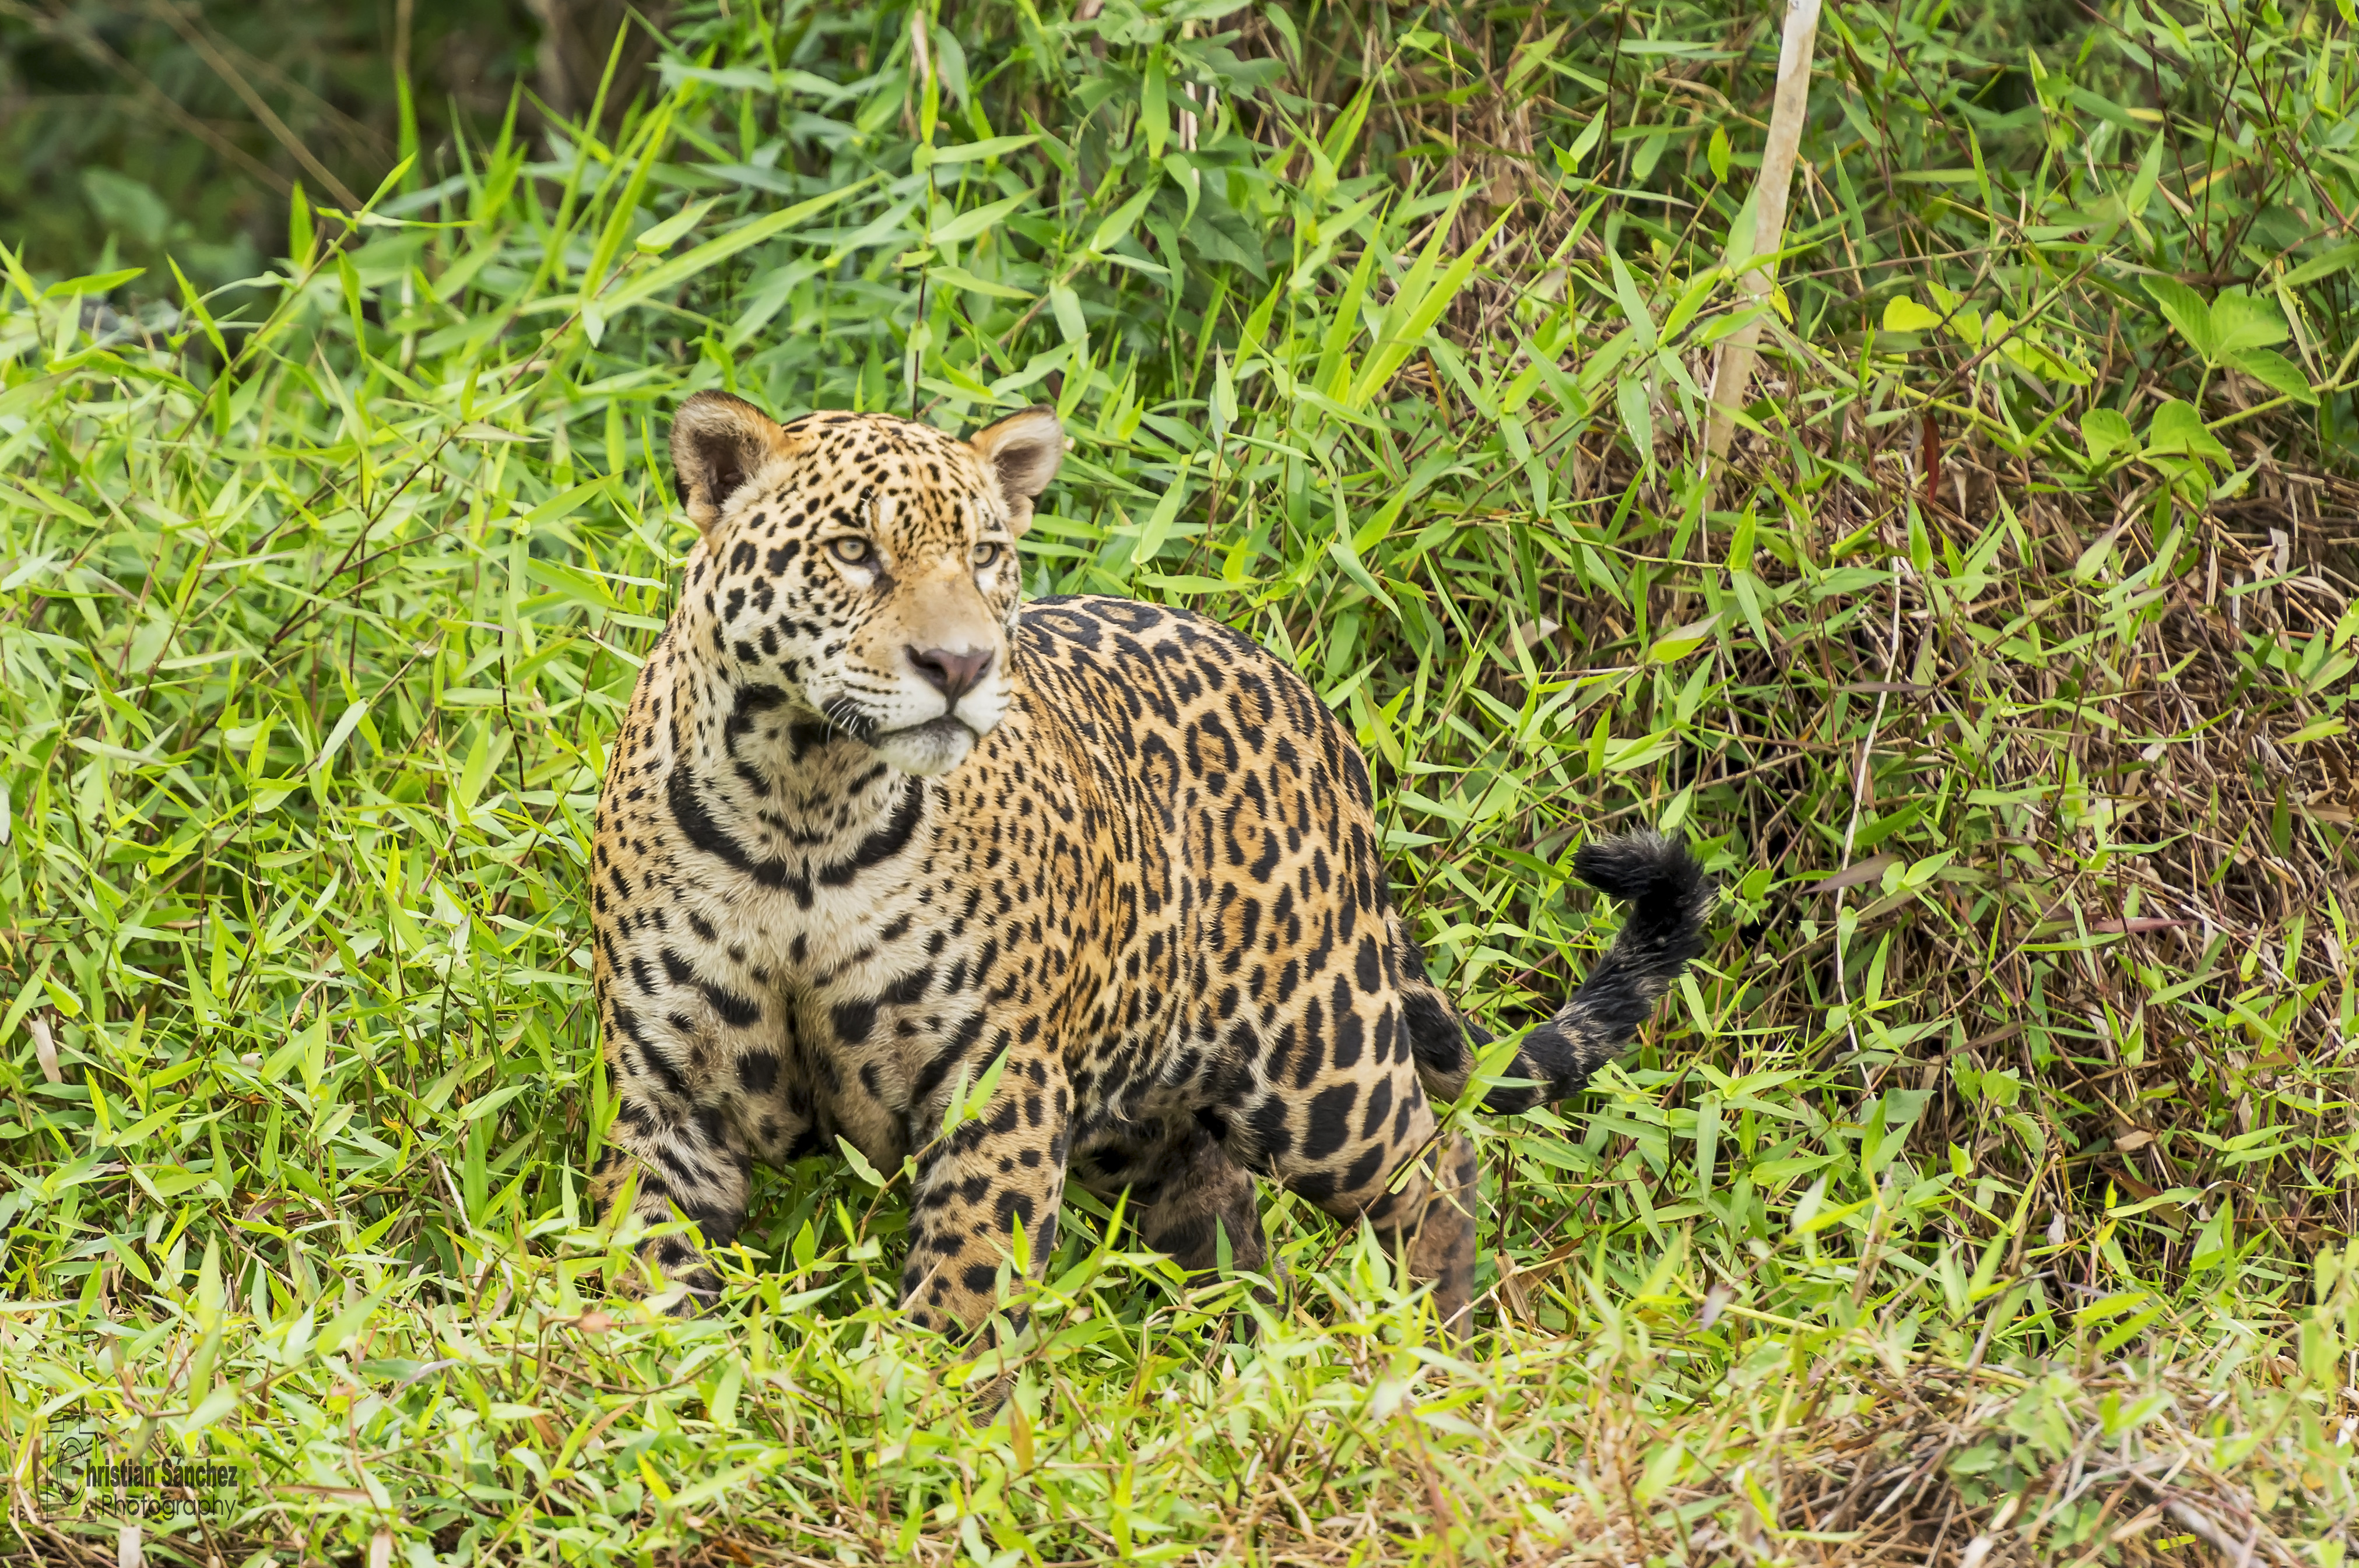 General 4046x2690 wildlife nature feline big cats mammals jaguars